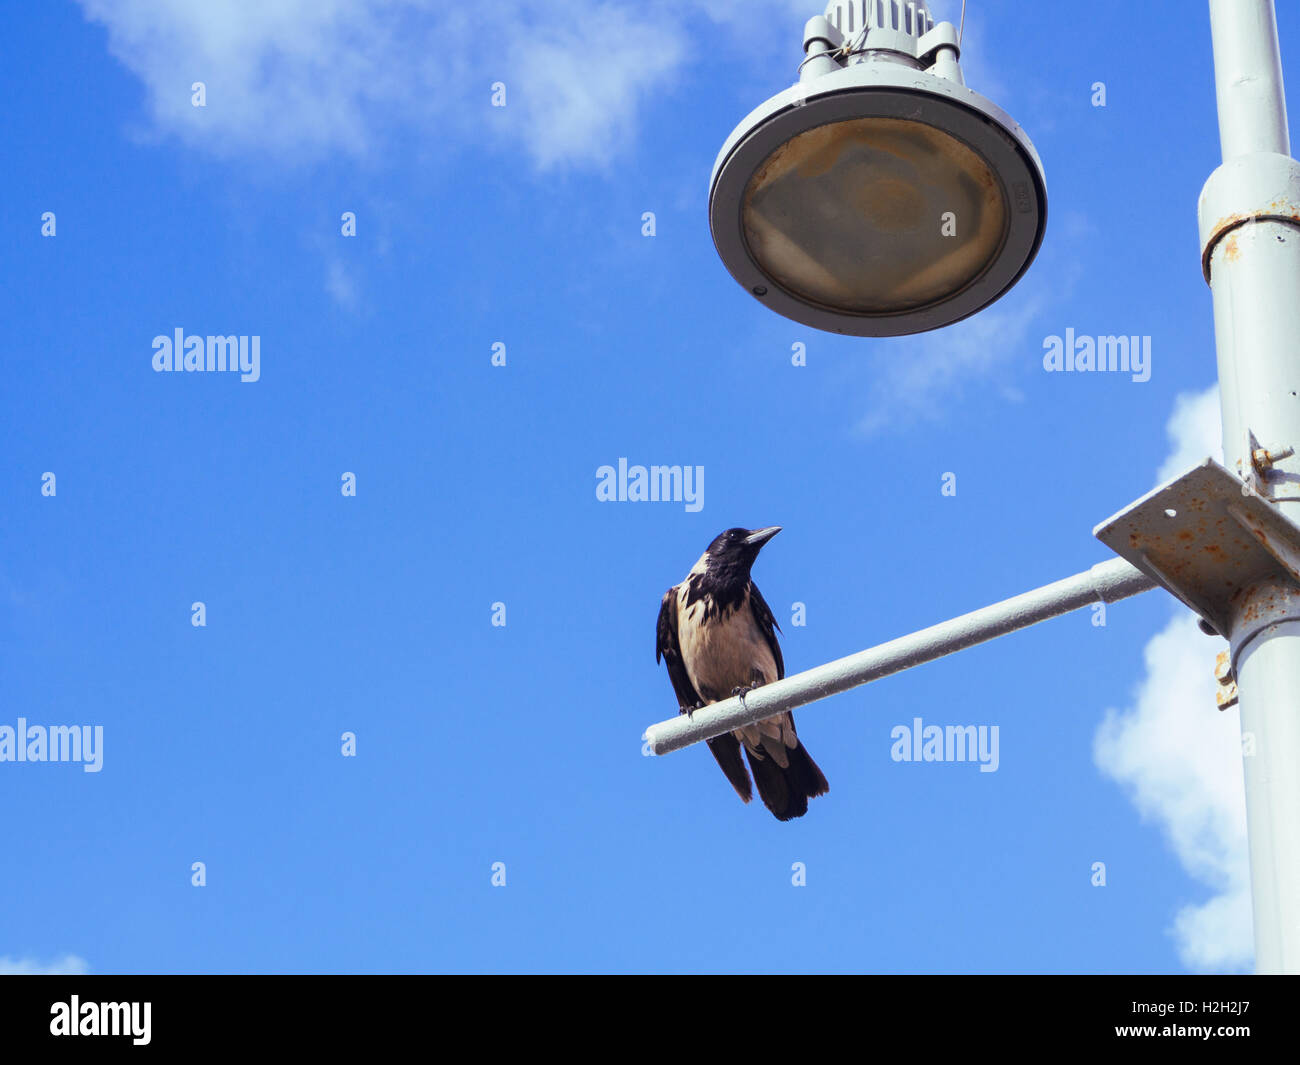 Hooded Crow (Corvus cornix) perché sur un lampadaire avec fond de ciel bleu. Photographié en Israël en mai Banque D'Images